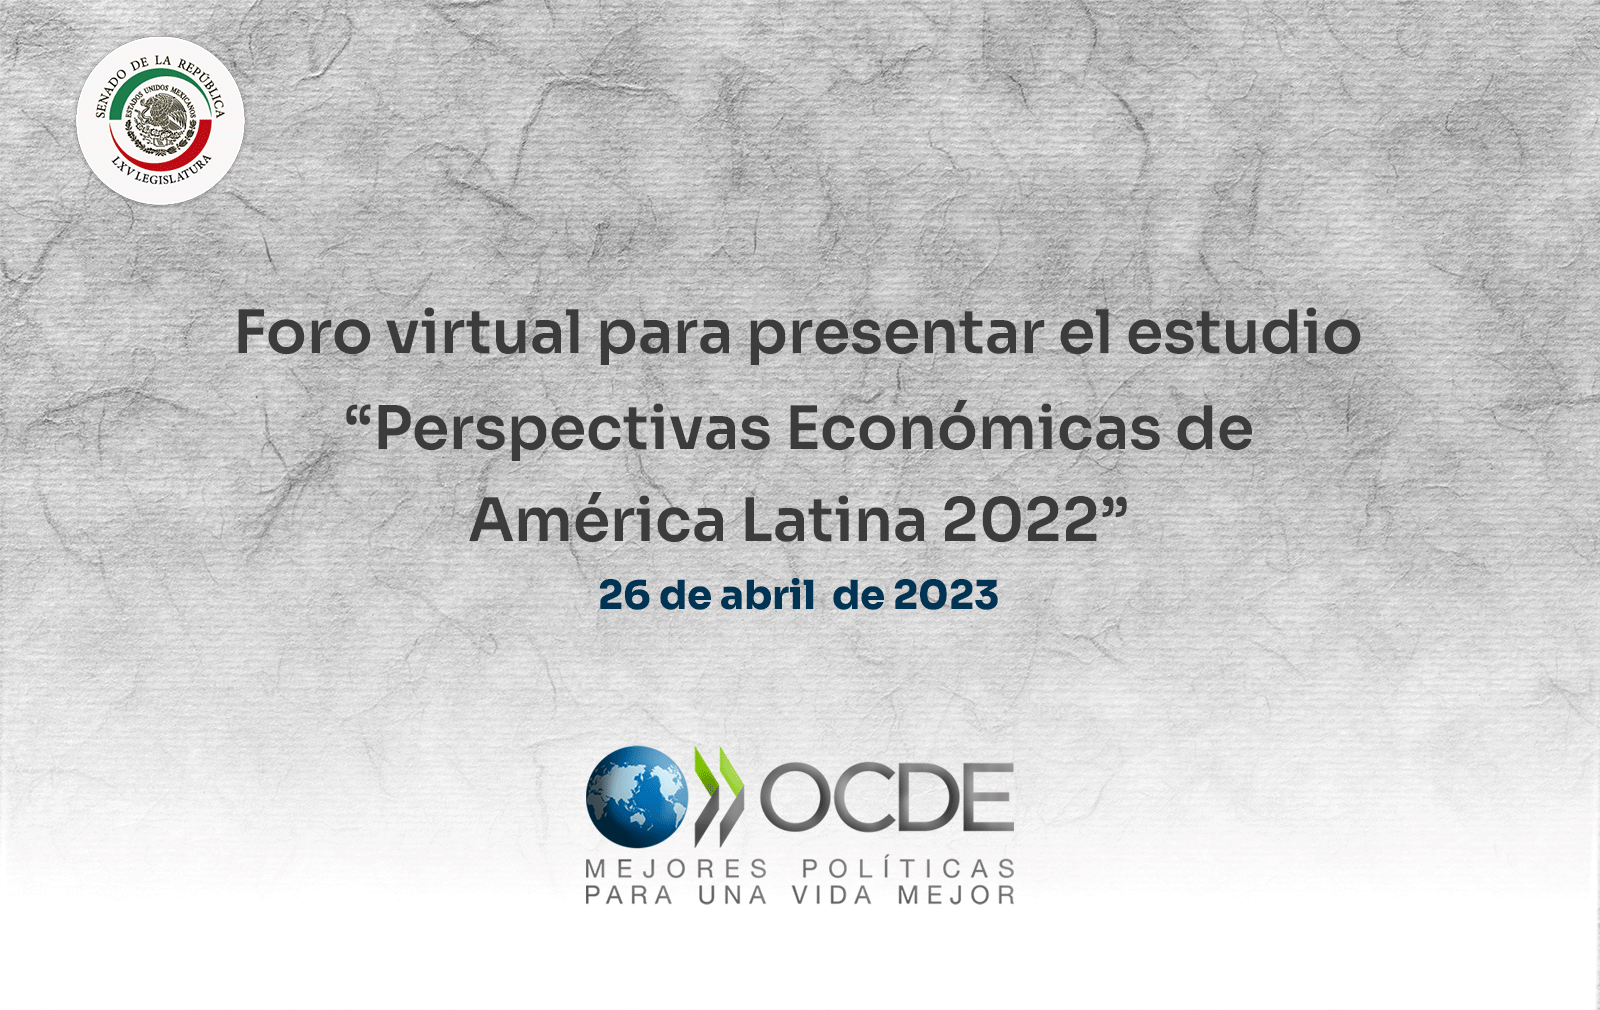 “Perspectivas económicas de américa latina 2022. Hacia una transición verde y justa”